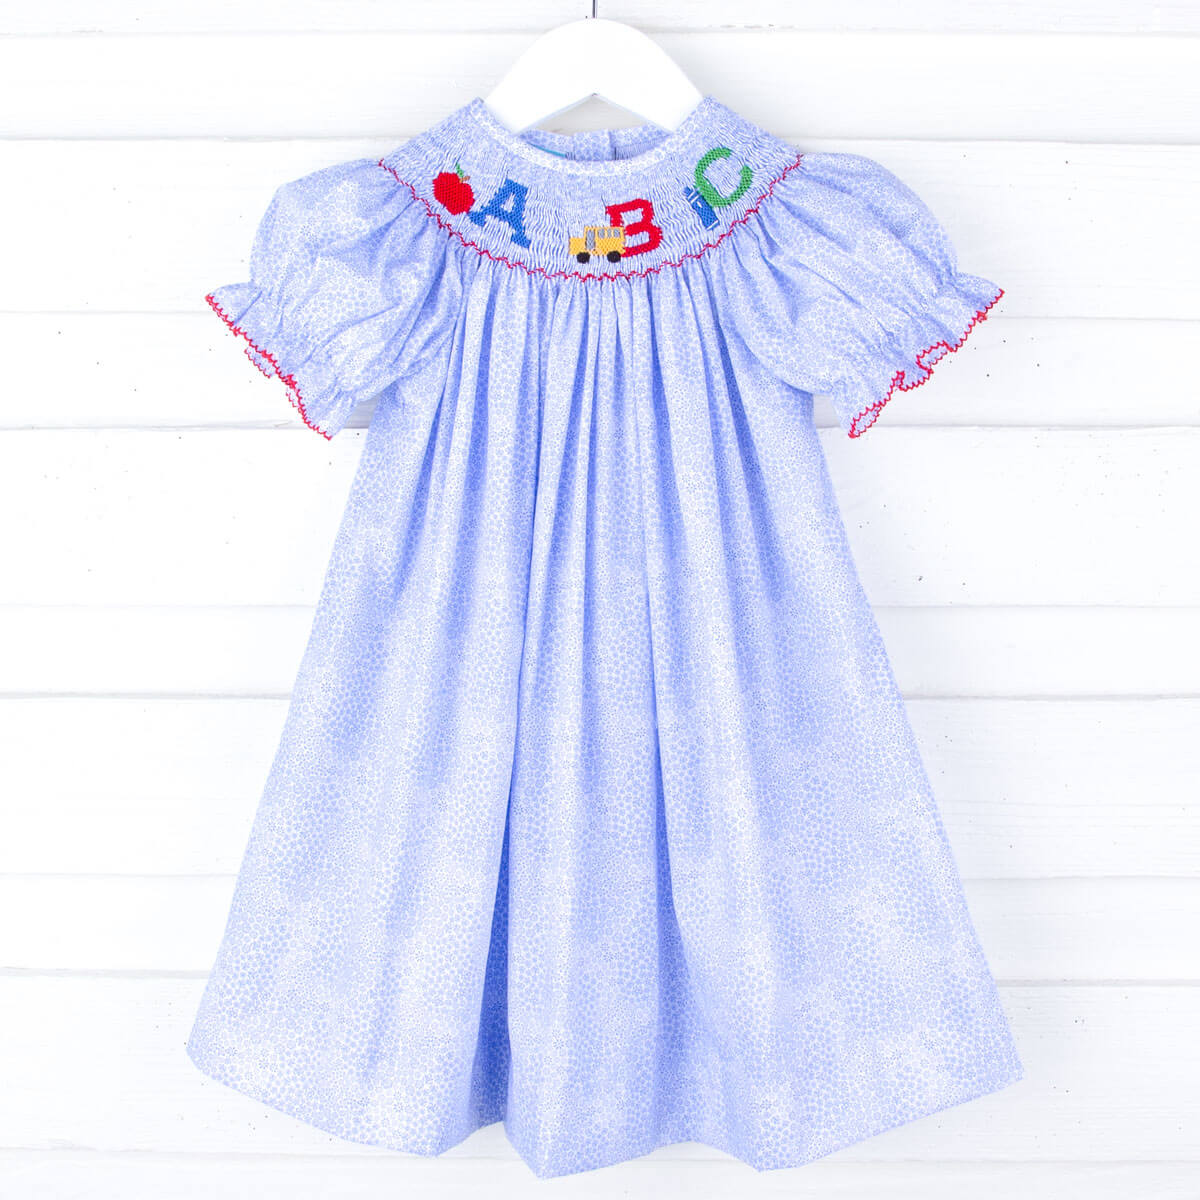 ABC Smocked Blue Floral Bishop Dress